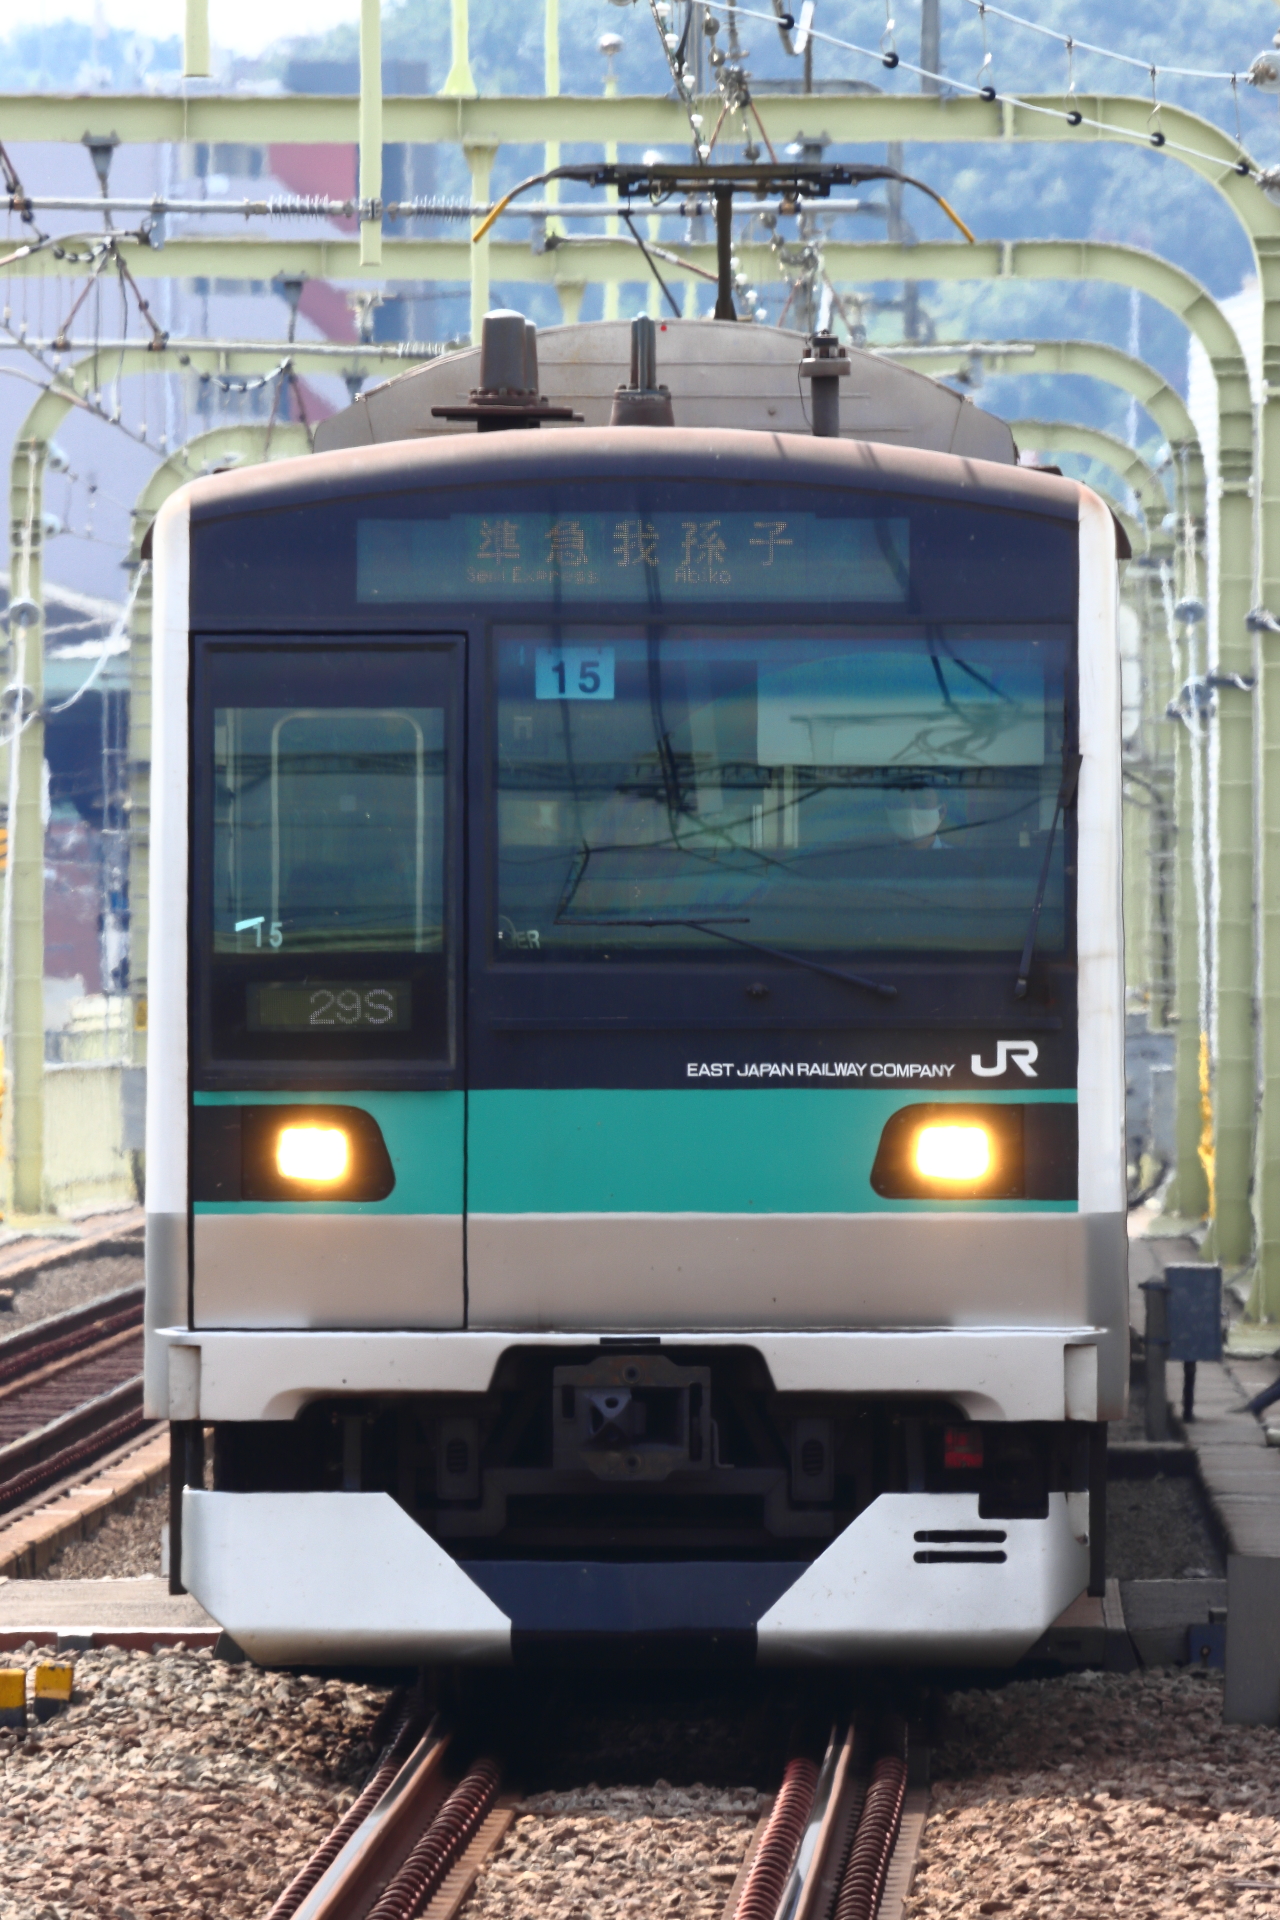 小田急の準急が抱える問題と今後の改善余地とは Odapedia 小田急を中心とした鉄道に関するブログメディア